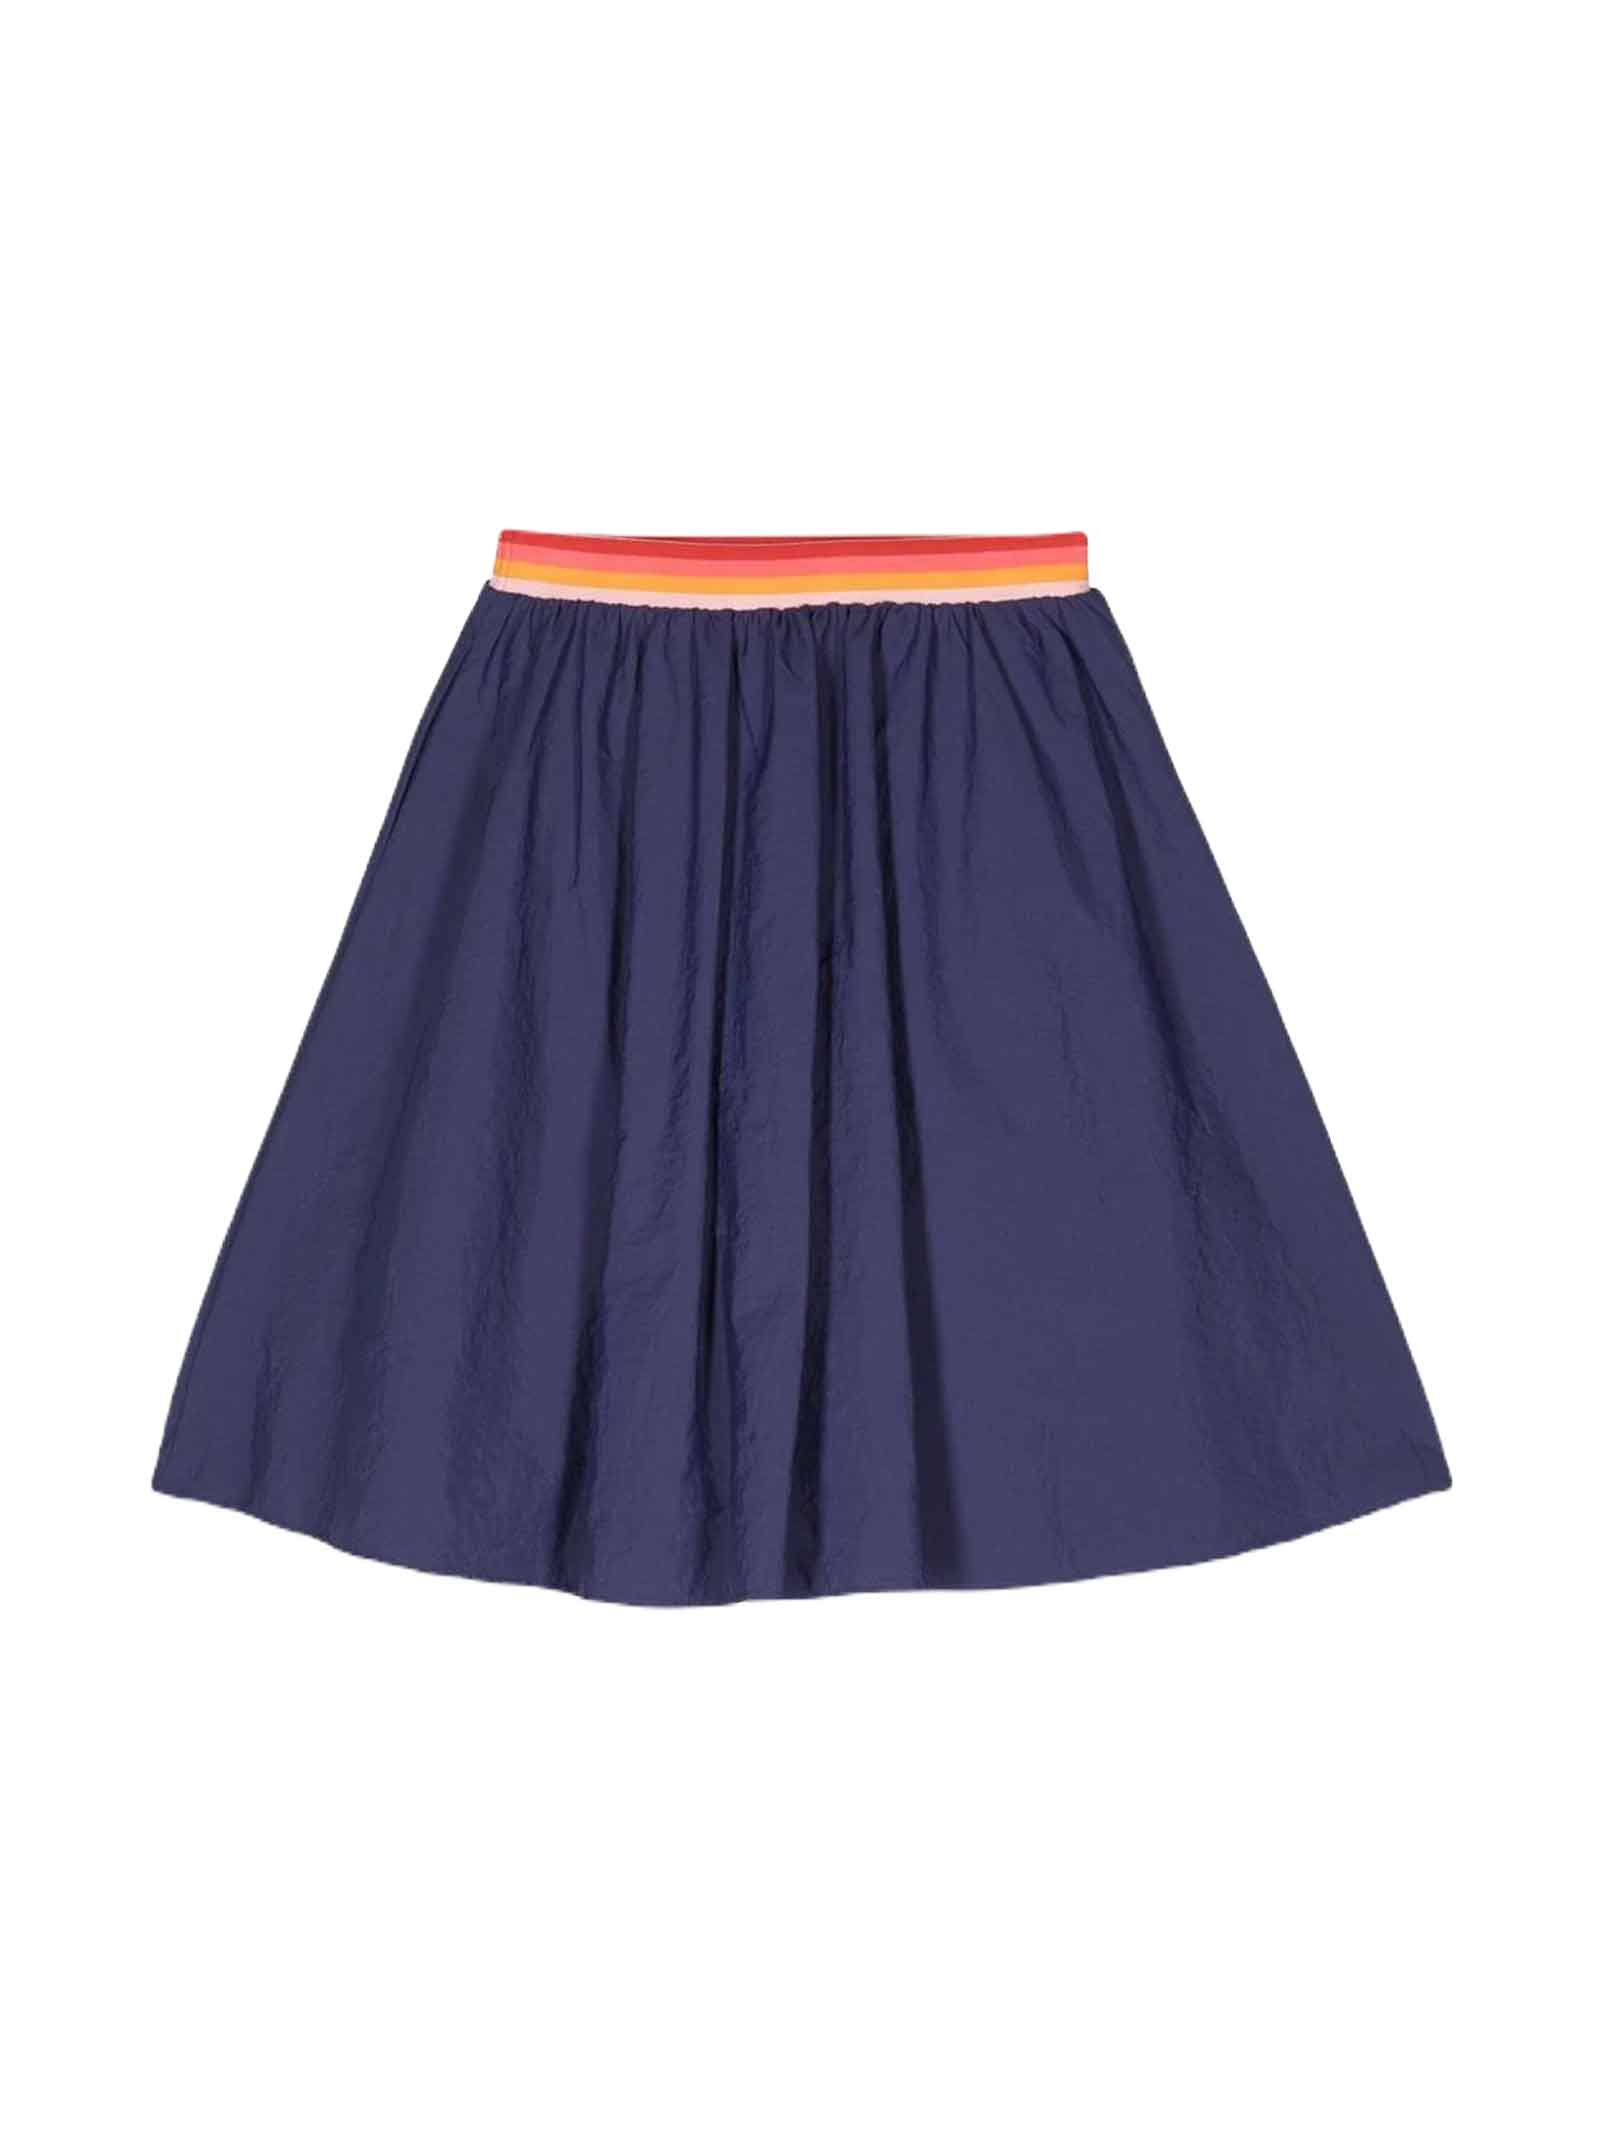 Kenzo Kids' Blue Skirt Girl